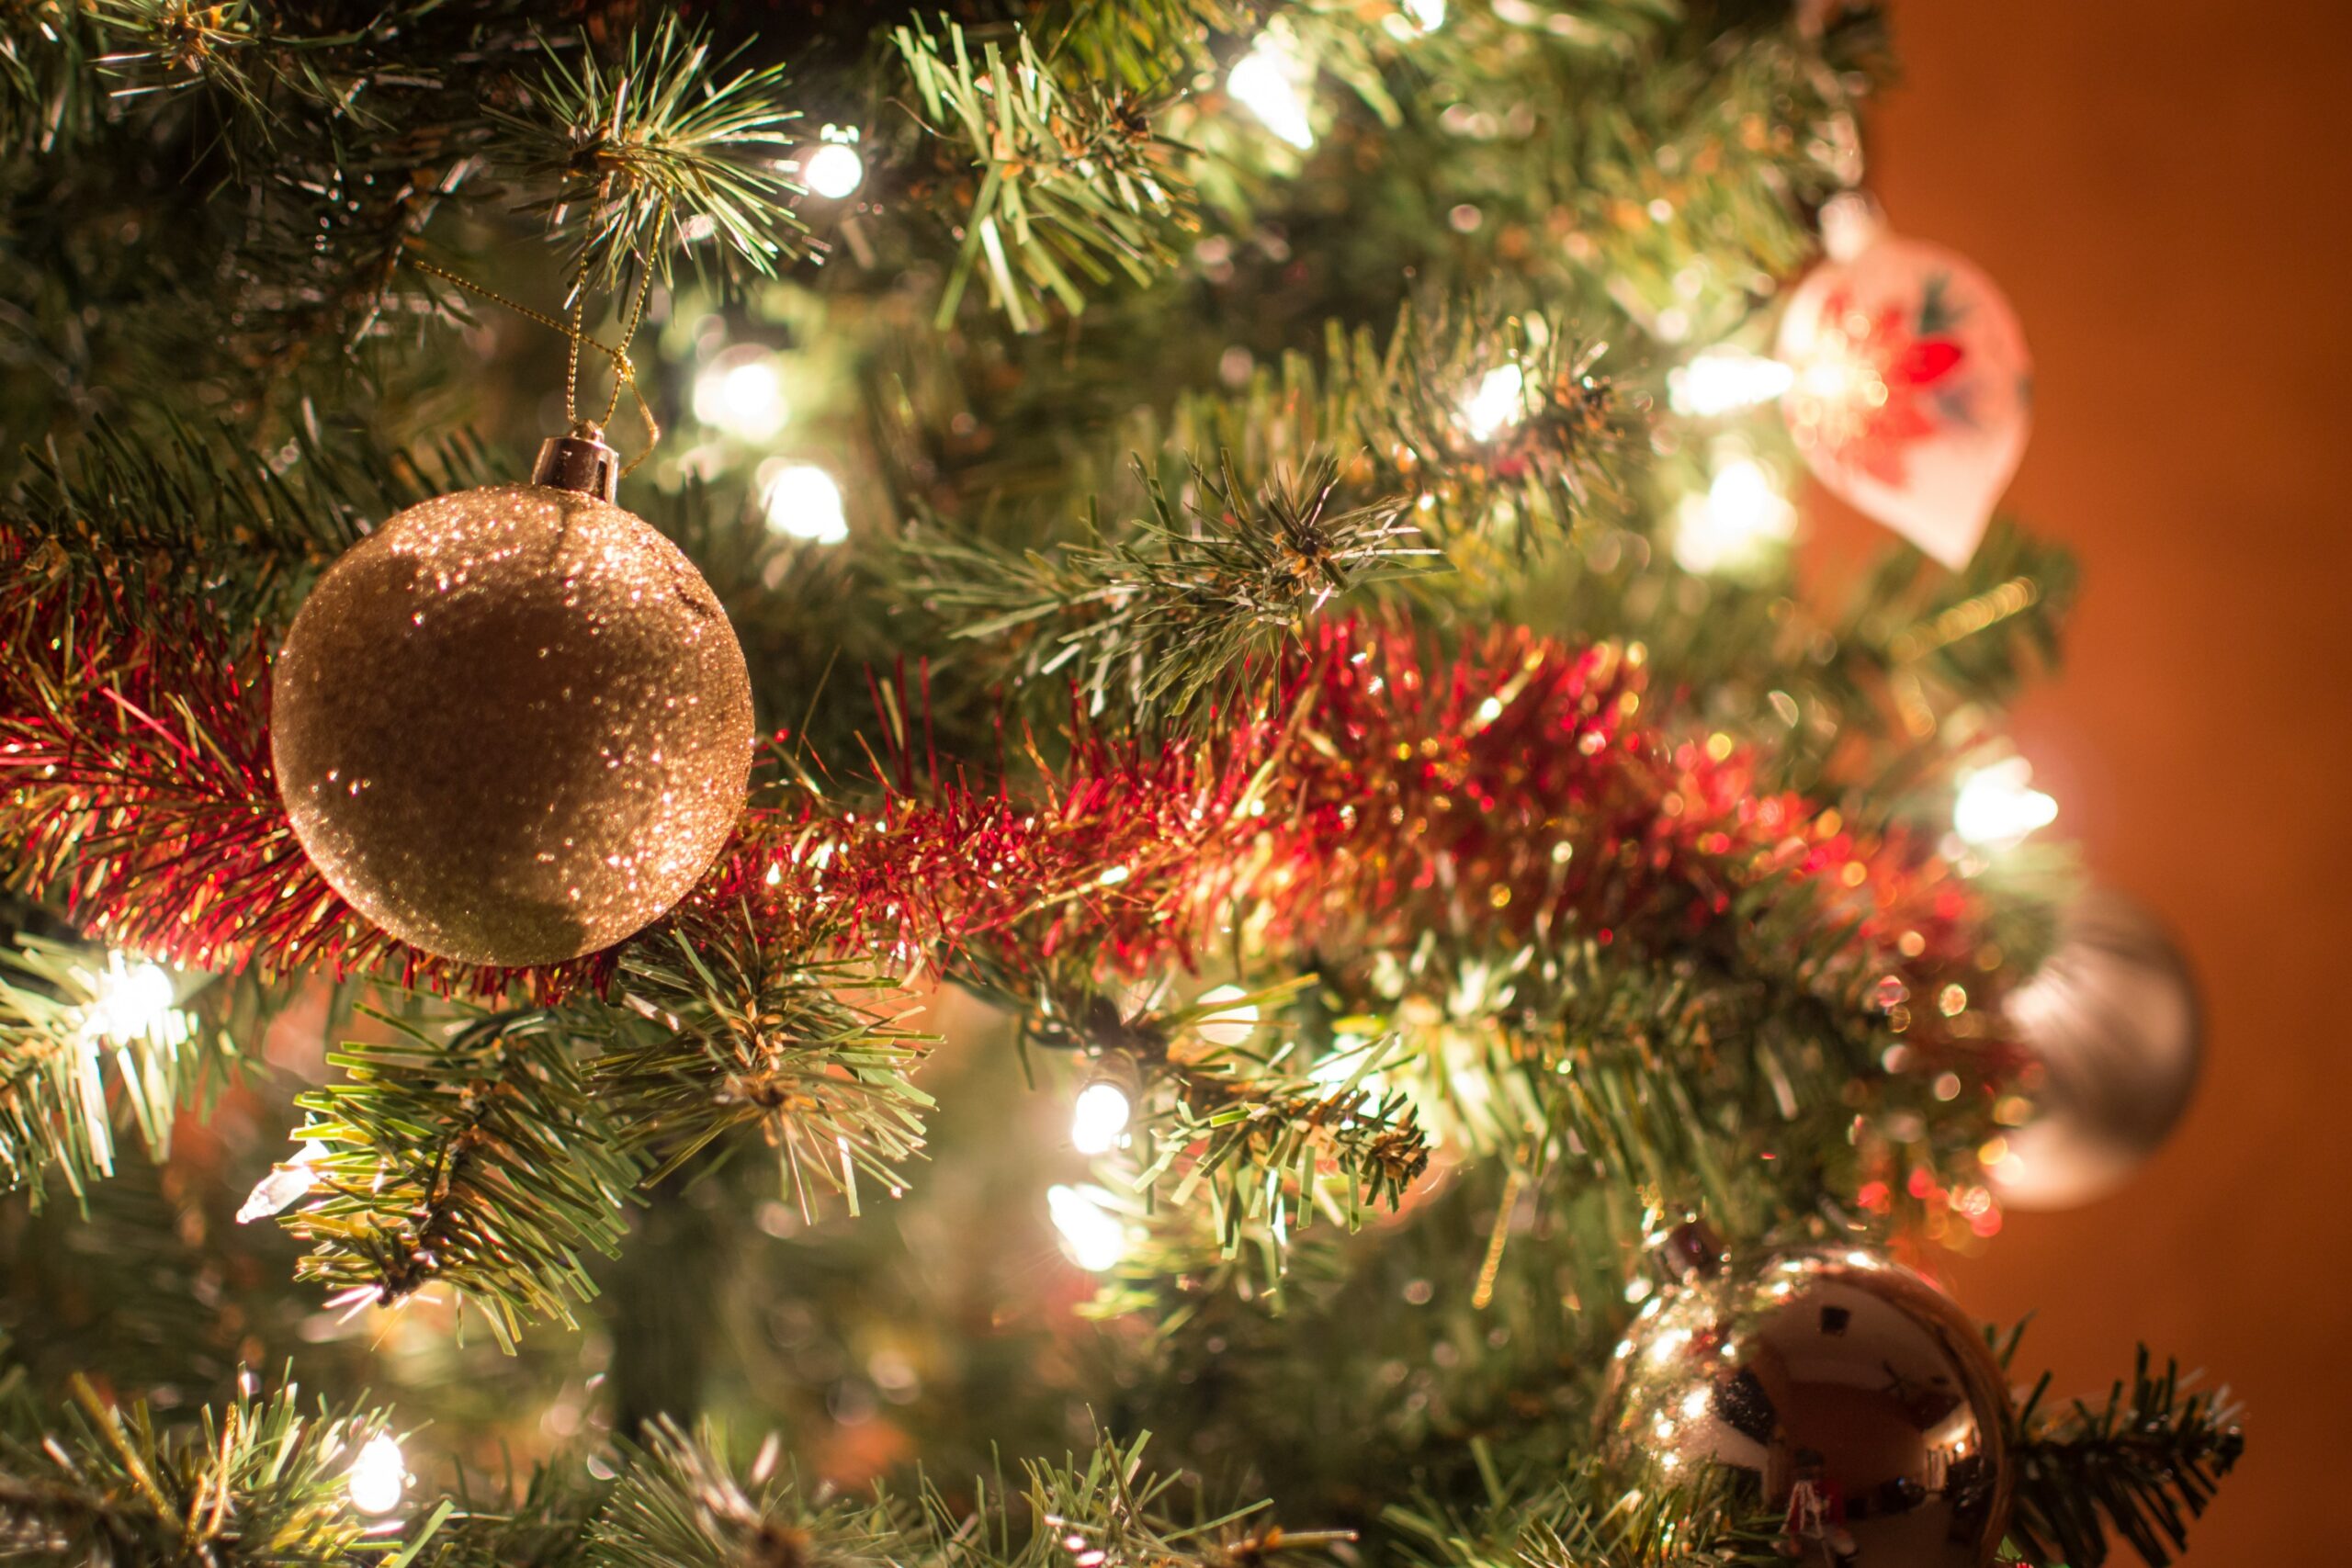 Närbild på en julgran som är pyntad med ljus, glitter och kulor.